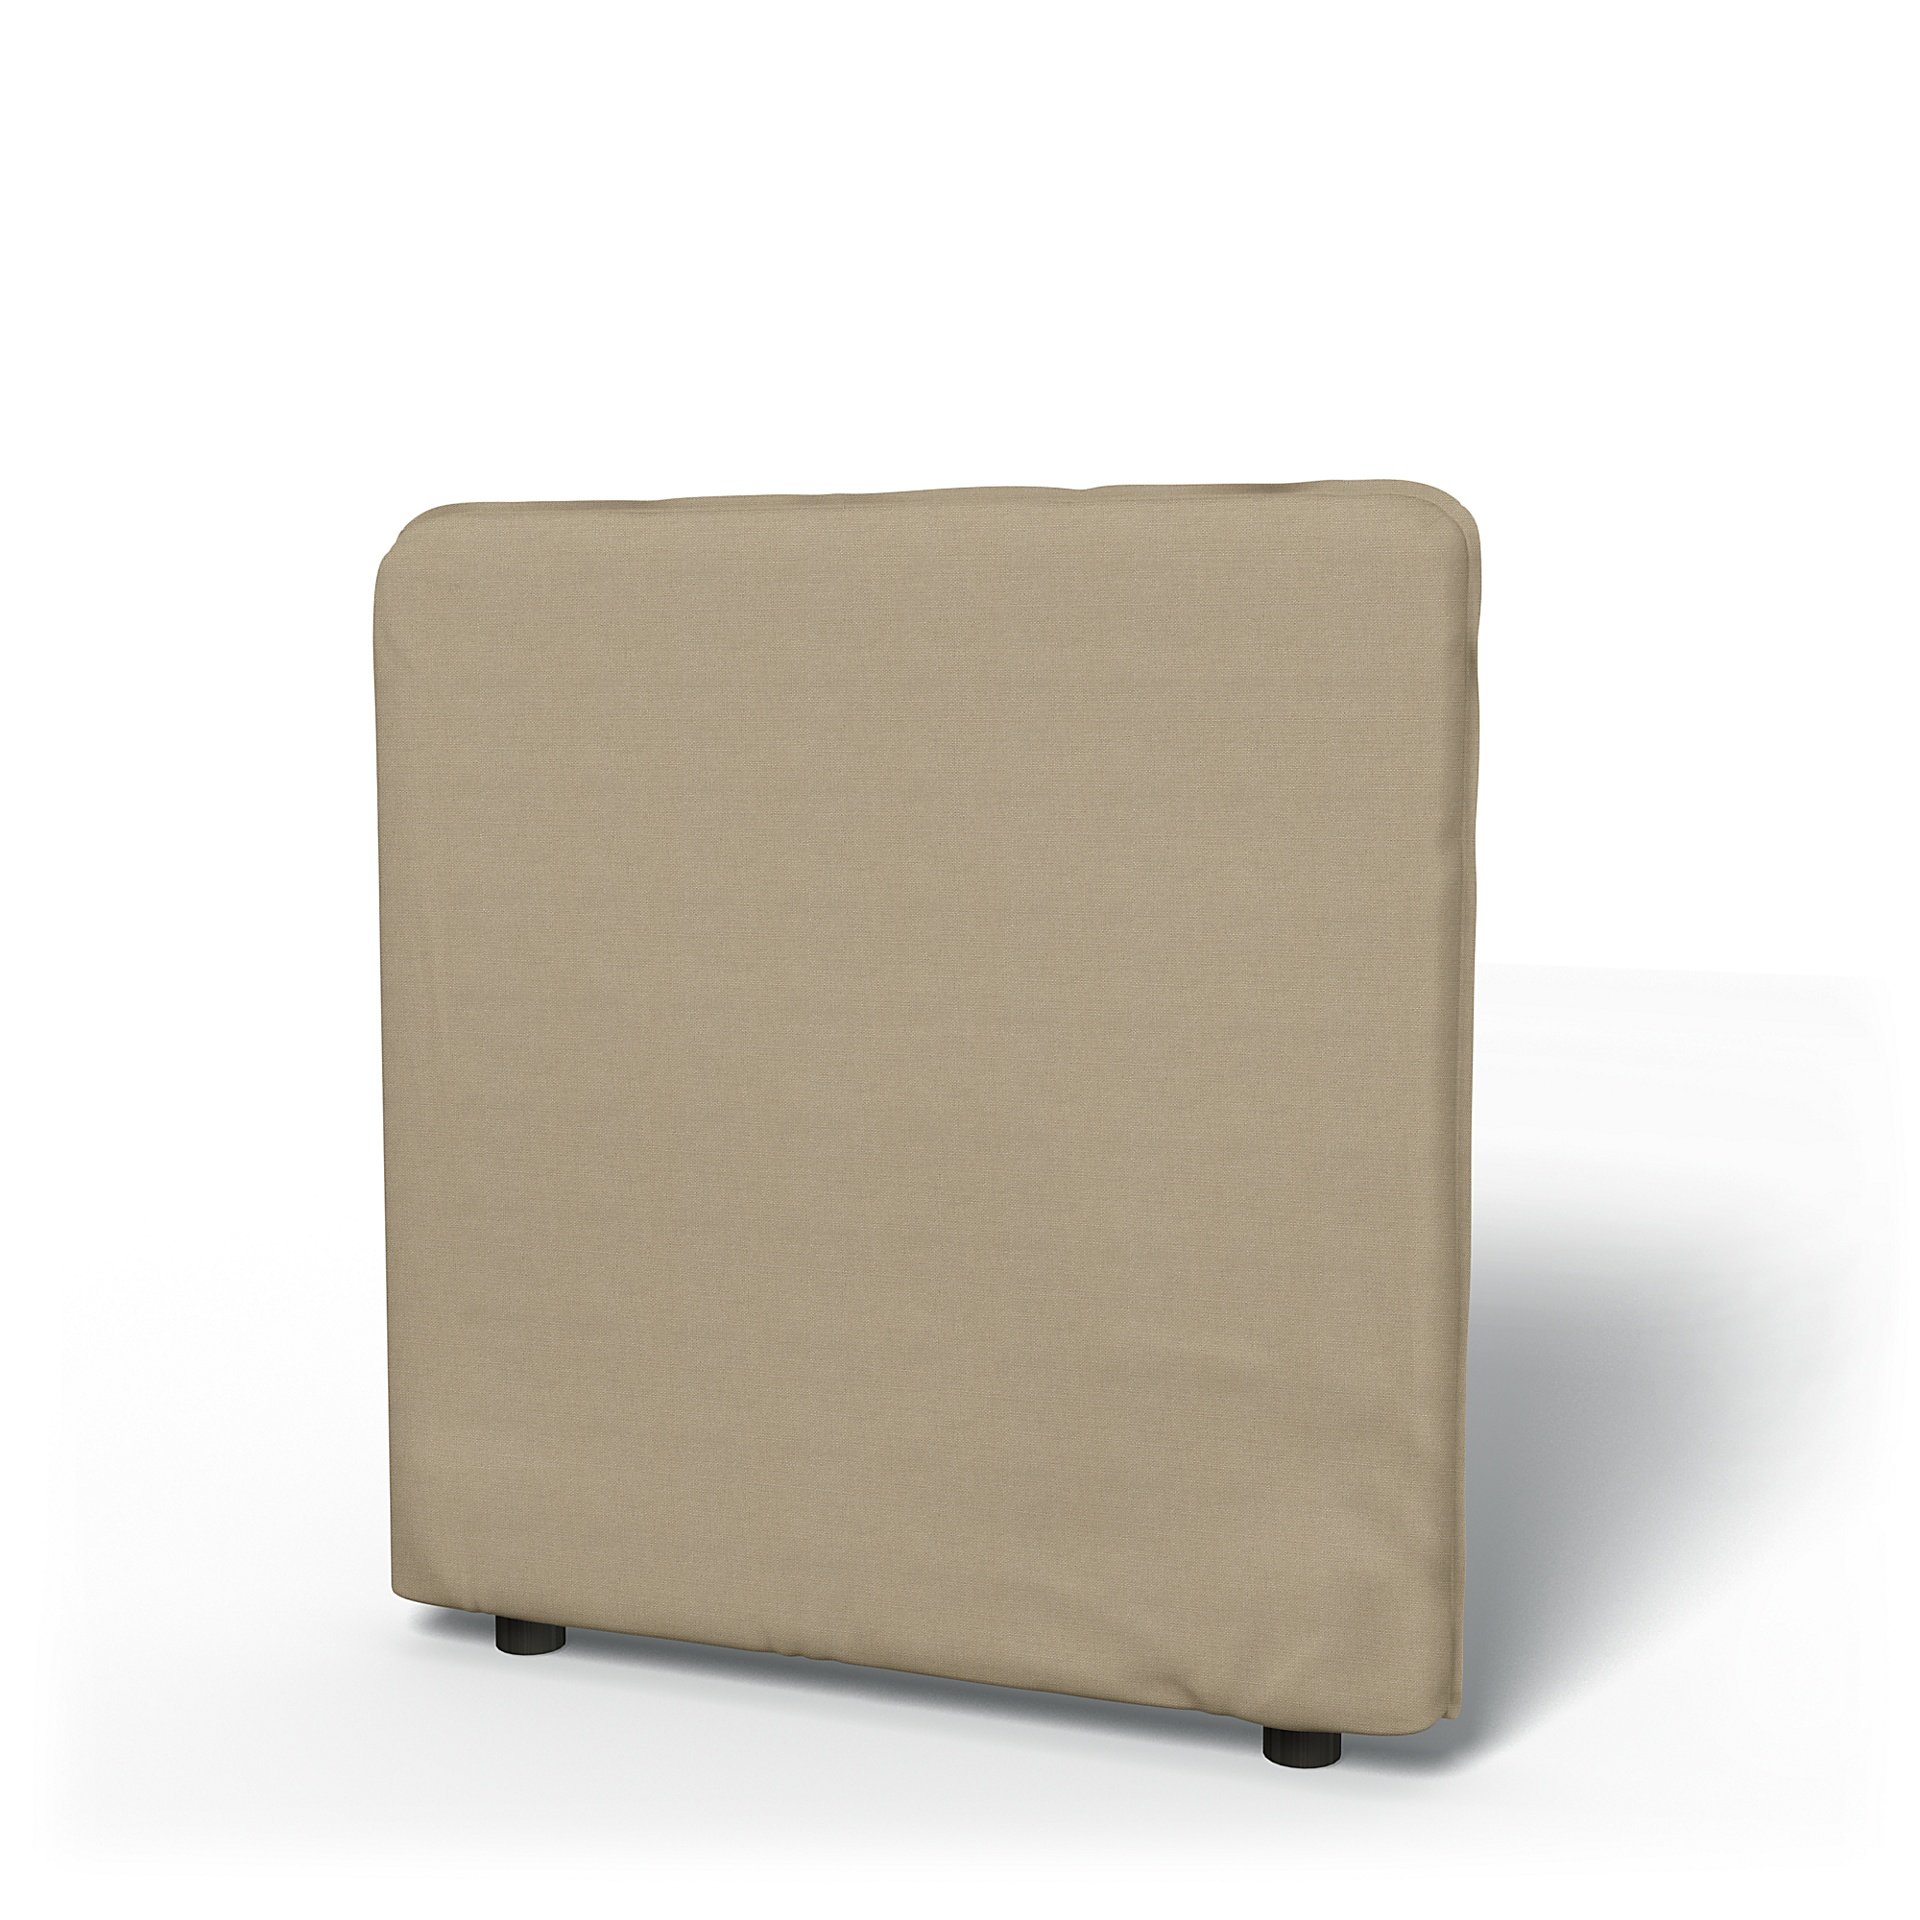 IKEA - Vallentuna Low Backrest Cover 80x80cm 32x32in, Tan, Linen - Bemz